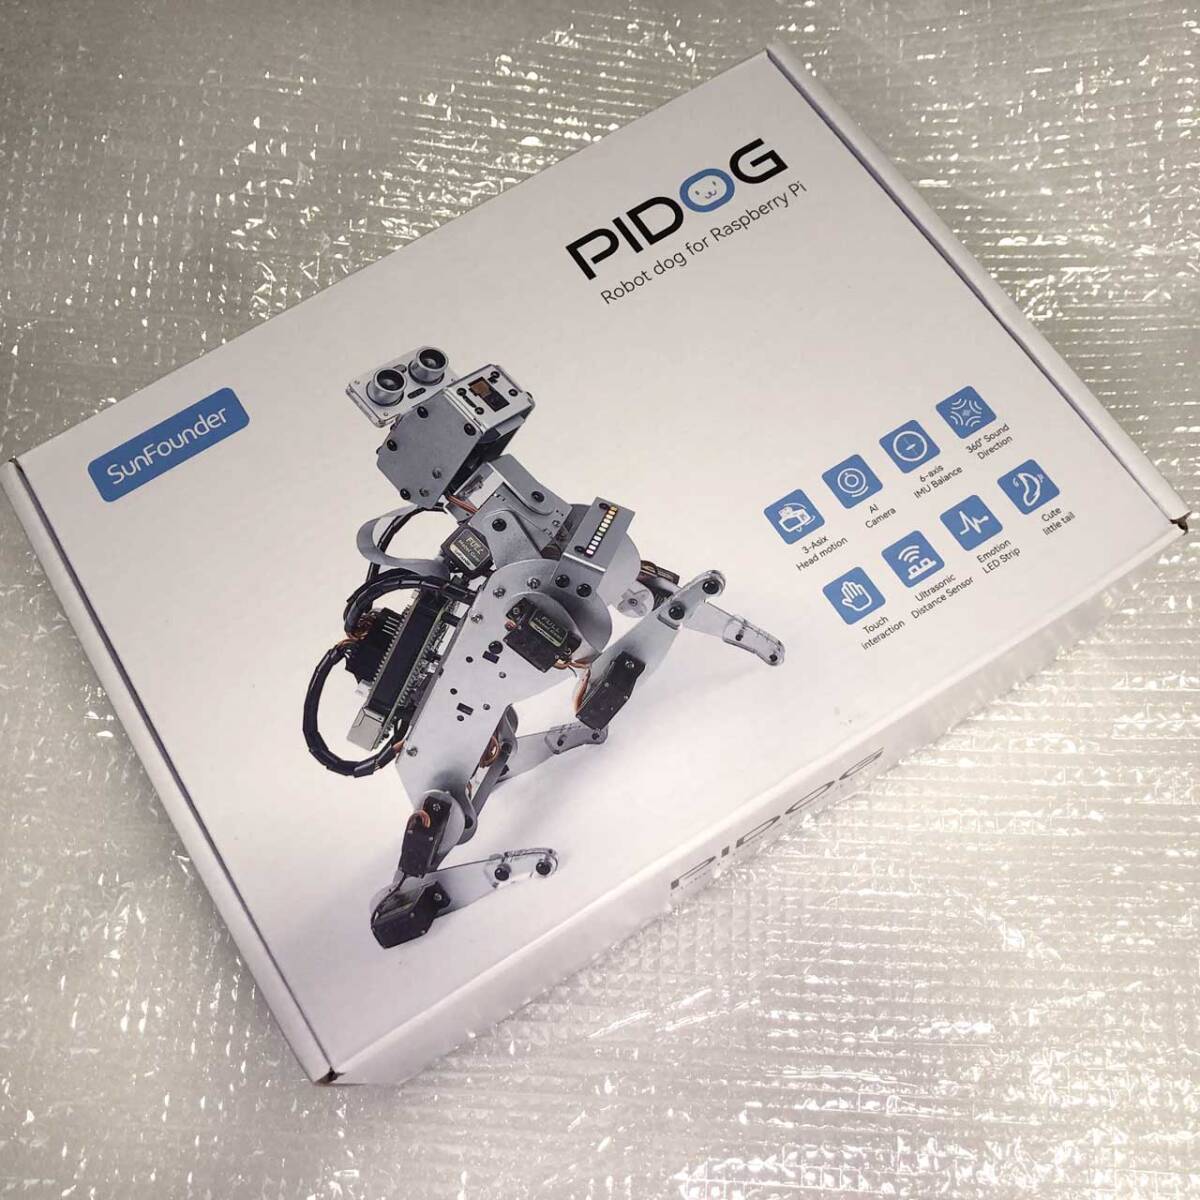 【未使用現状渡し】PiDOG AIロボット犬の電子工作キット 開封のみ品 Raspberry Piは別途必要 SunFounder製の画像1